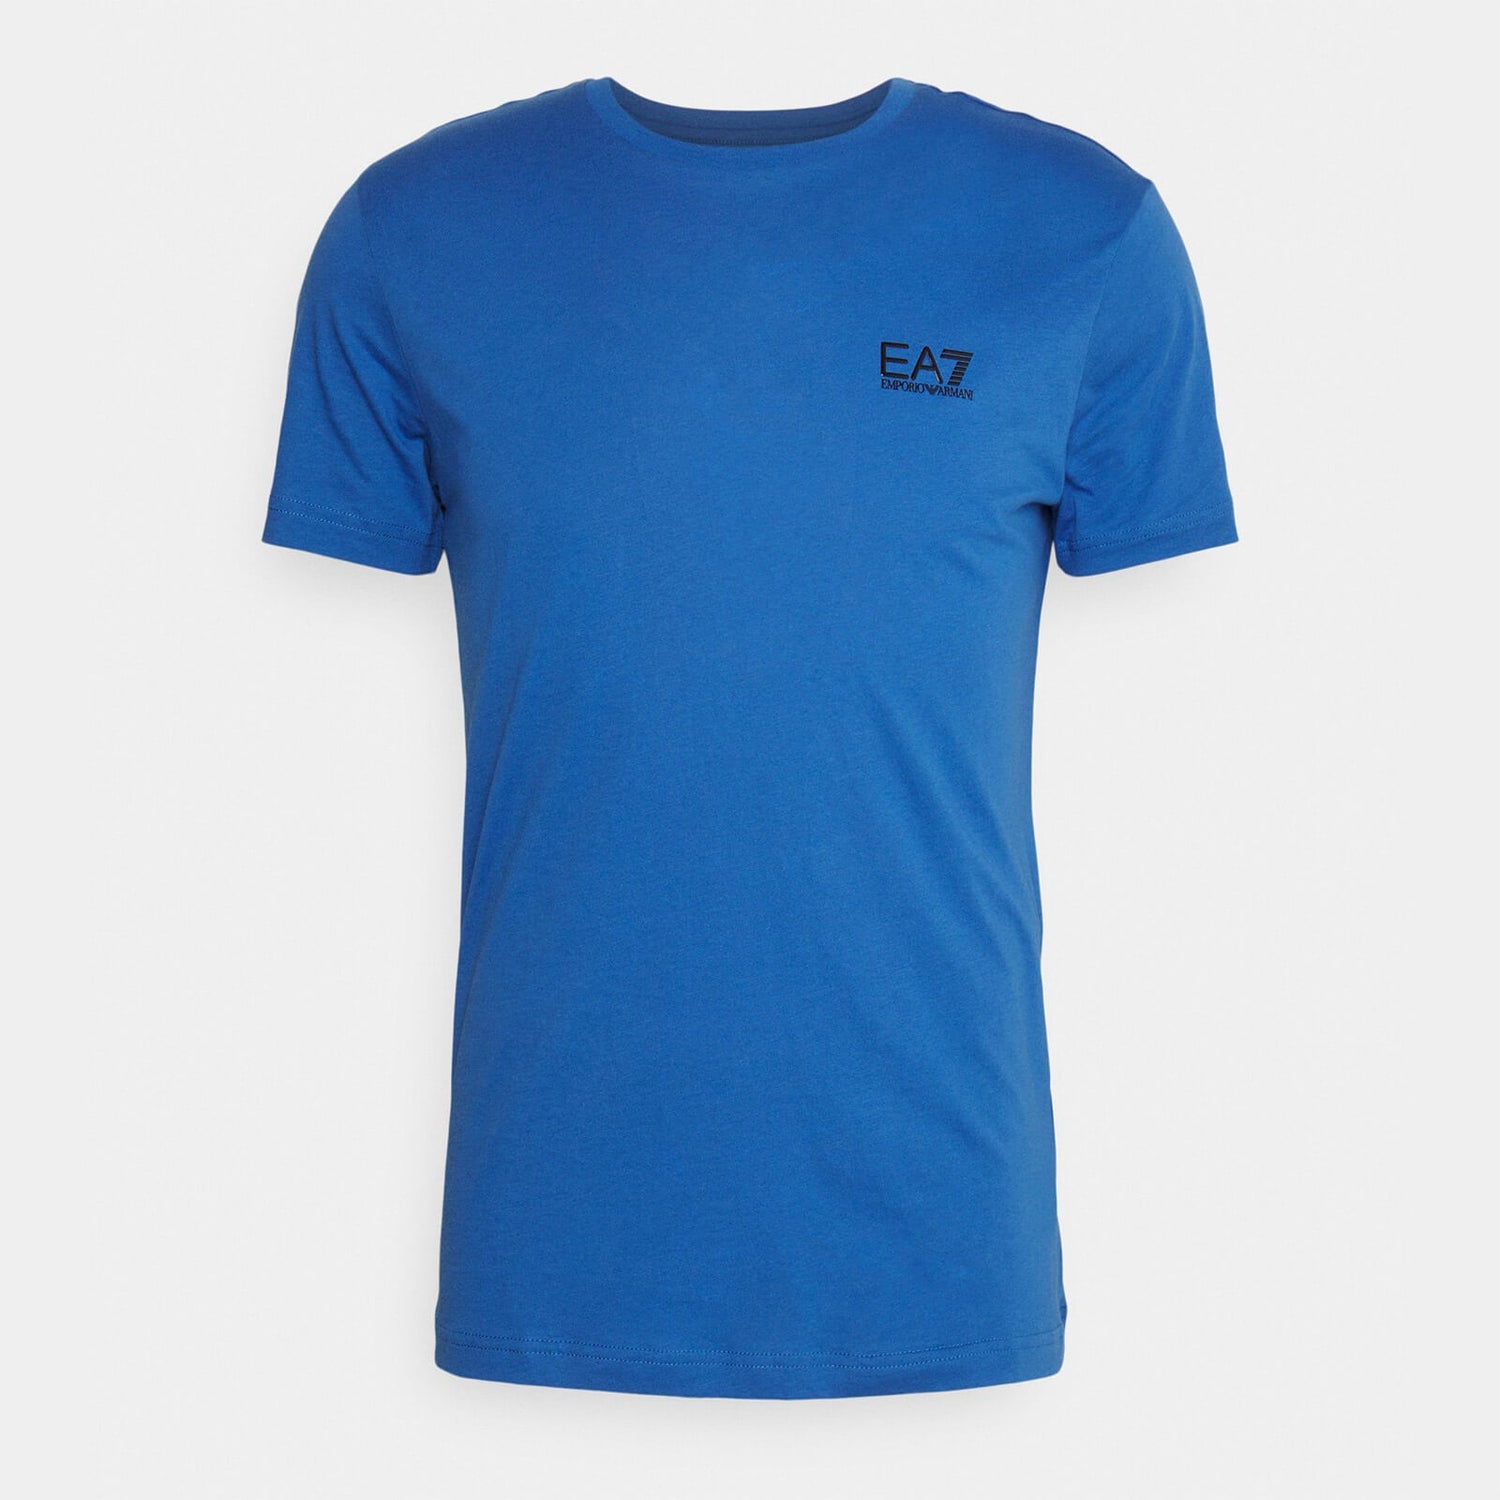 EA7 Core Cotton-Jersey T-Shirt - S